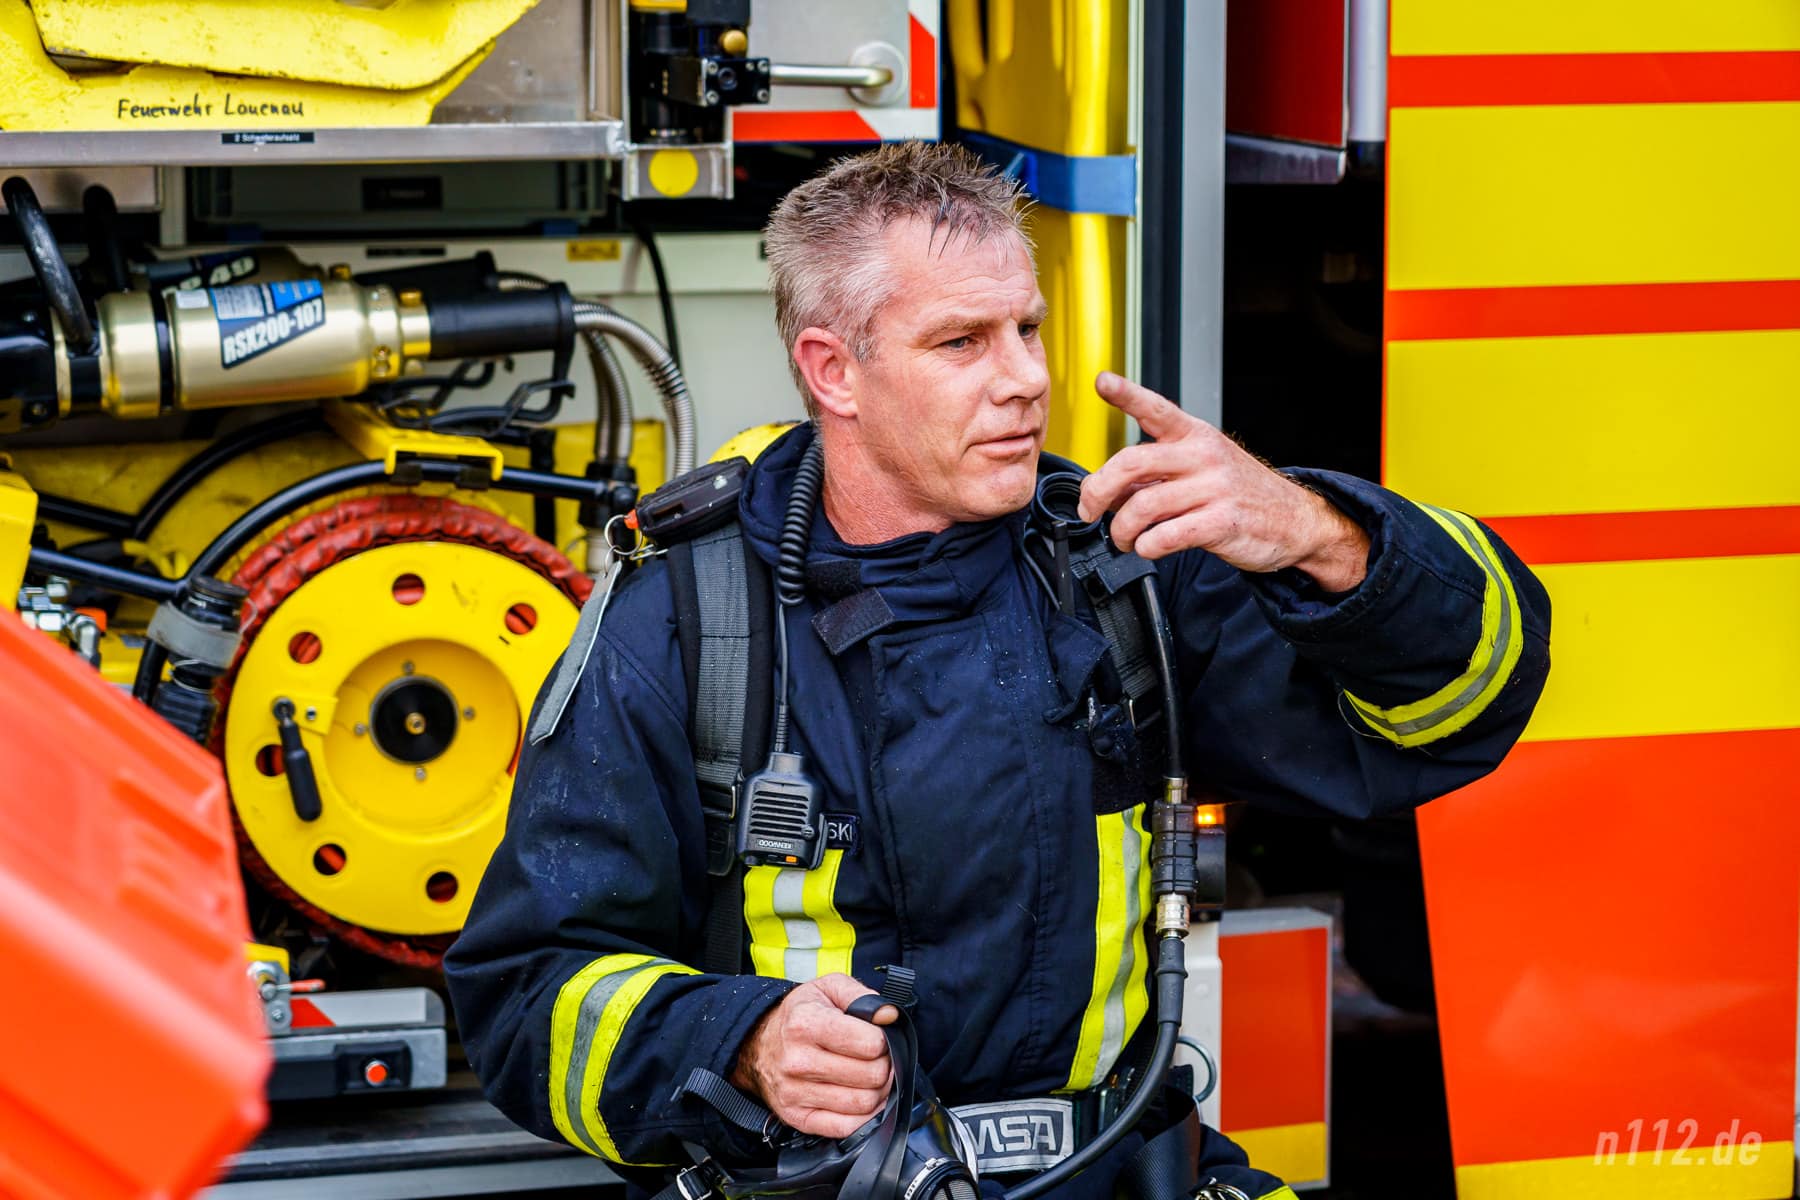 Ordentlich verschwitzt und mit verrauchter Einsatzkleidung sitzt dieser Feuerwehrmann nach seinem Einsatz unter Atemschutz an einem Löschfahrzeug (Foto: n112.de/Stefan Hillen)